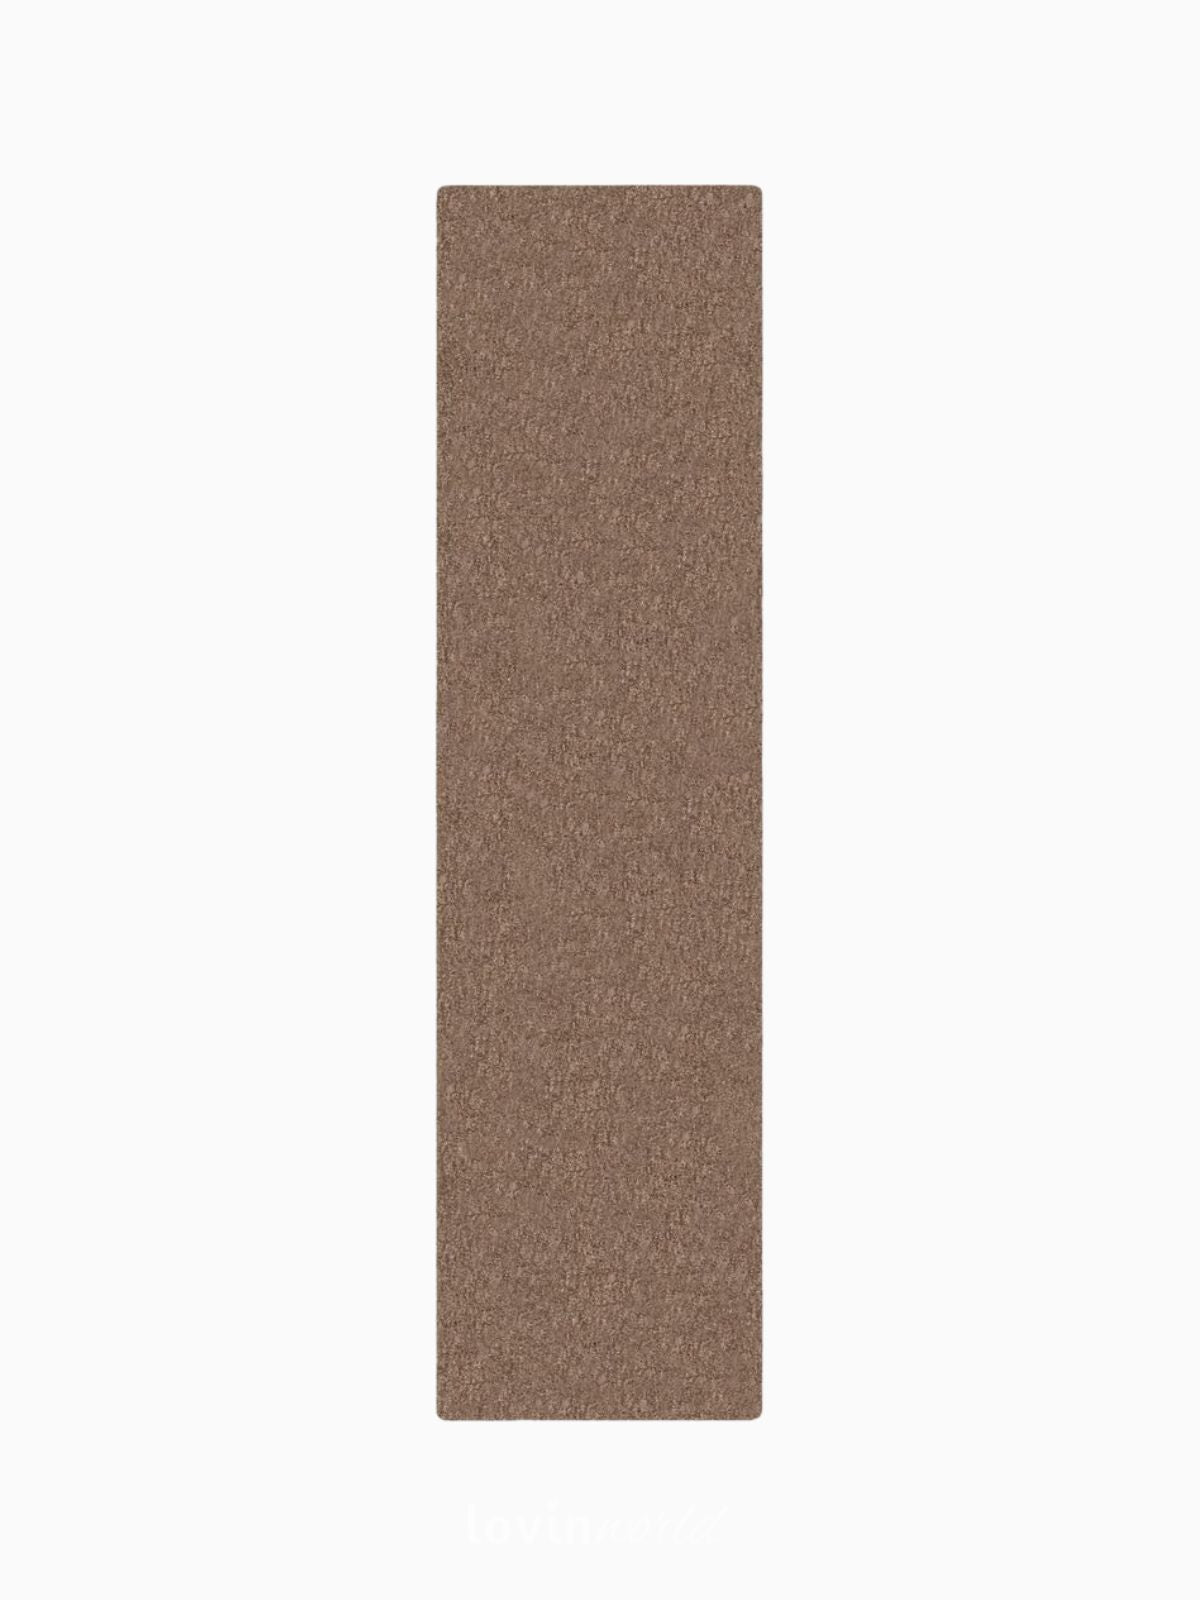 Runner shaggy Velvet in poliestere, colore tortora 60x230 cm.-1